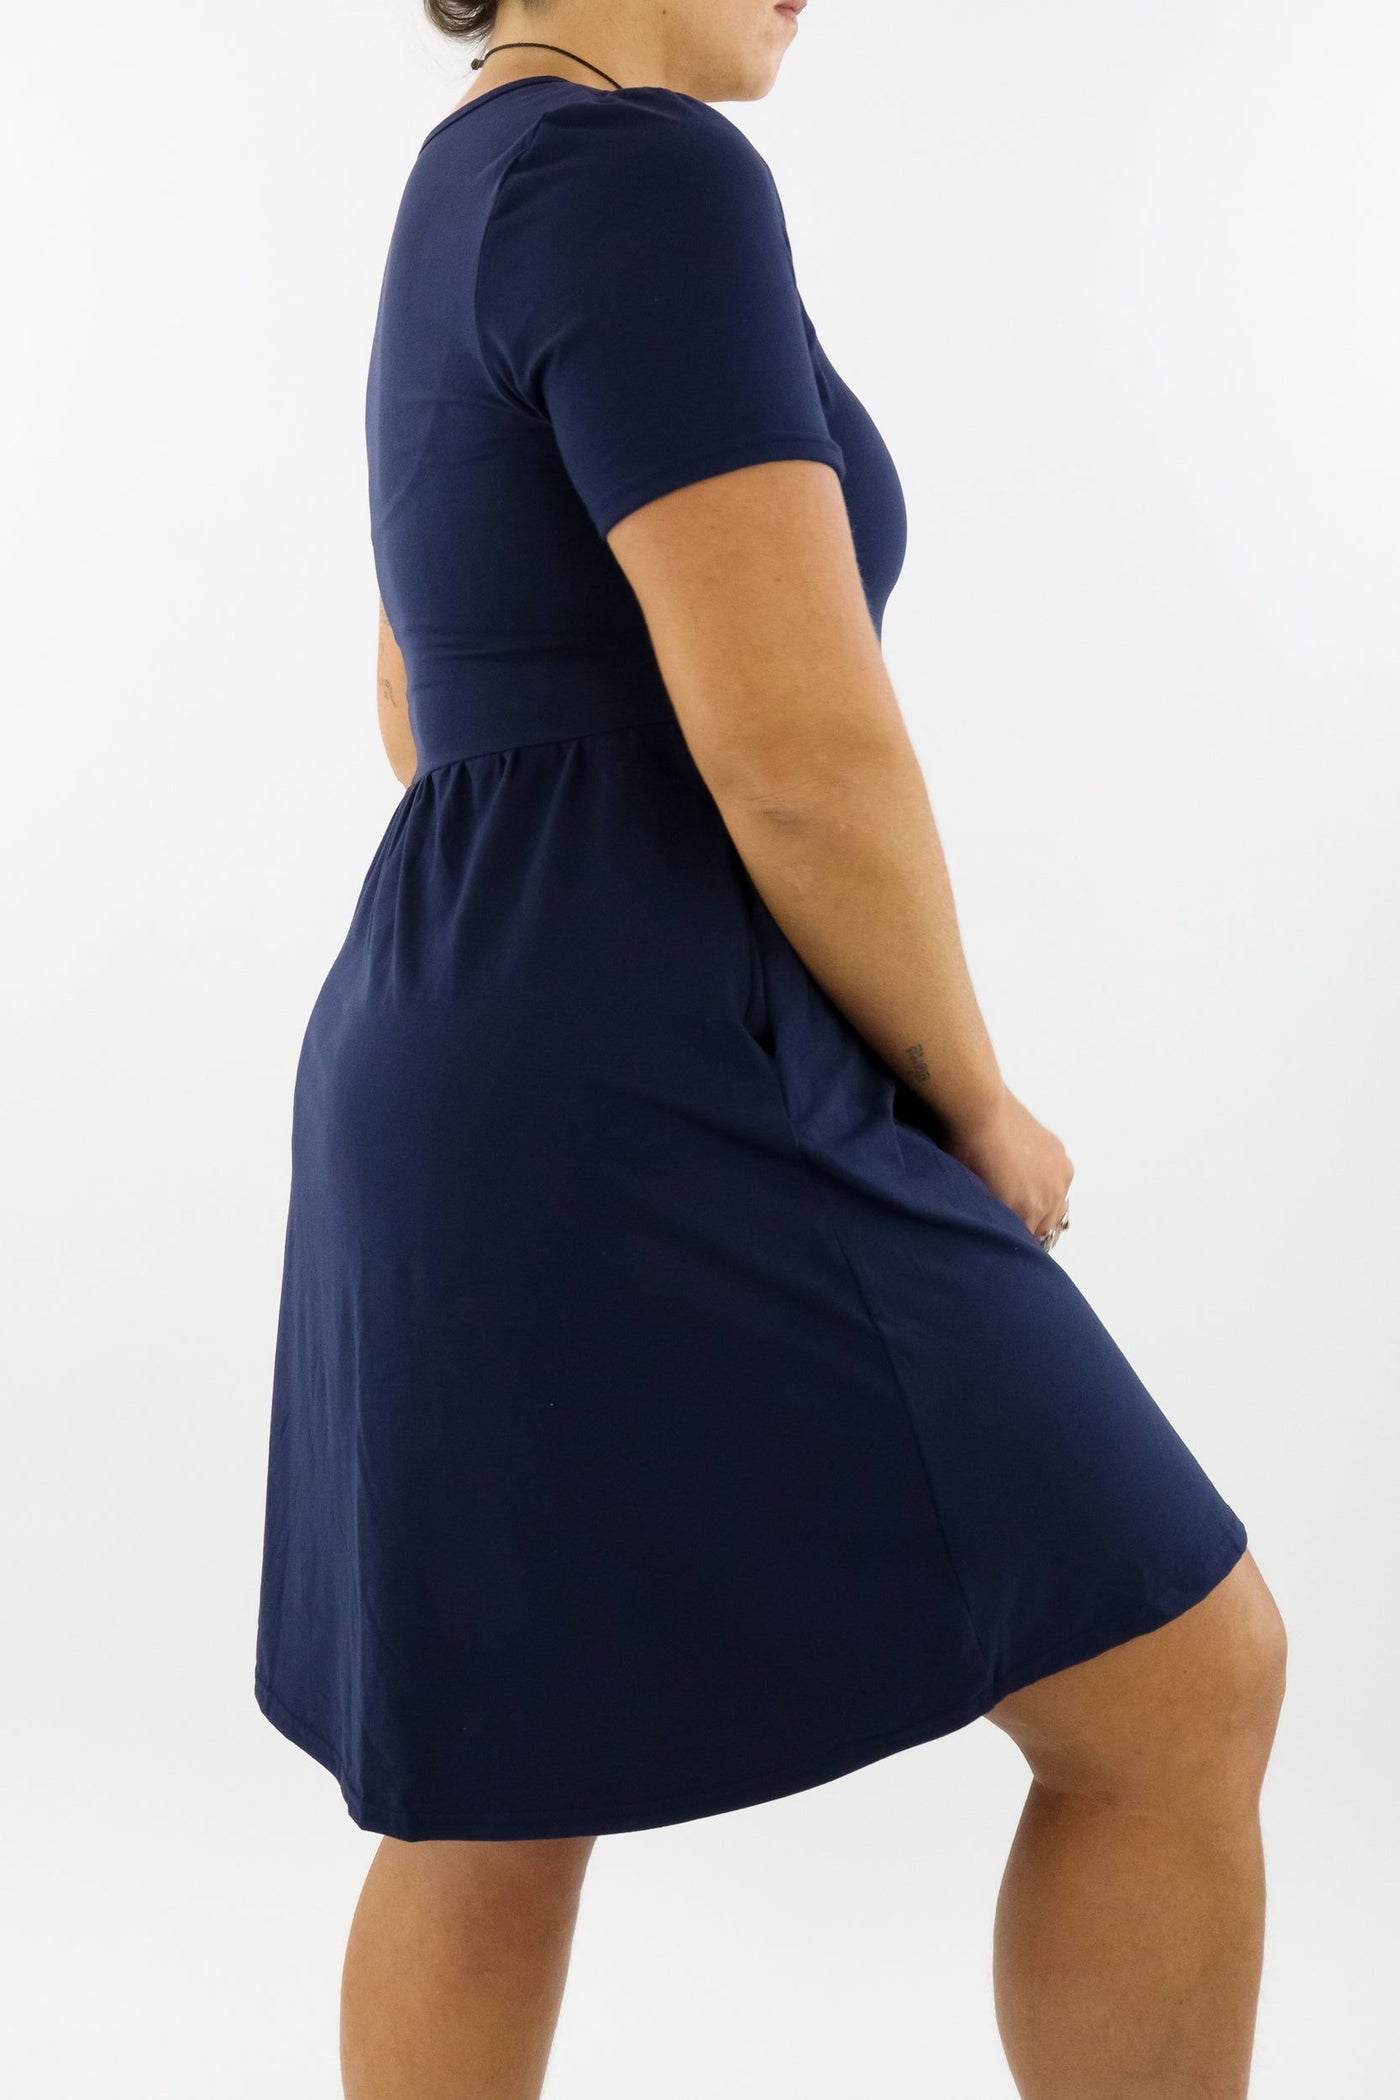 Navy - Short Sleeve Skater Dress - Knee Length - Side Pockets Knee Length Skater Dress Pawlie   